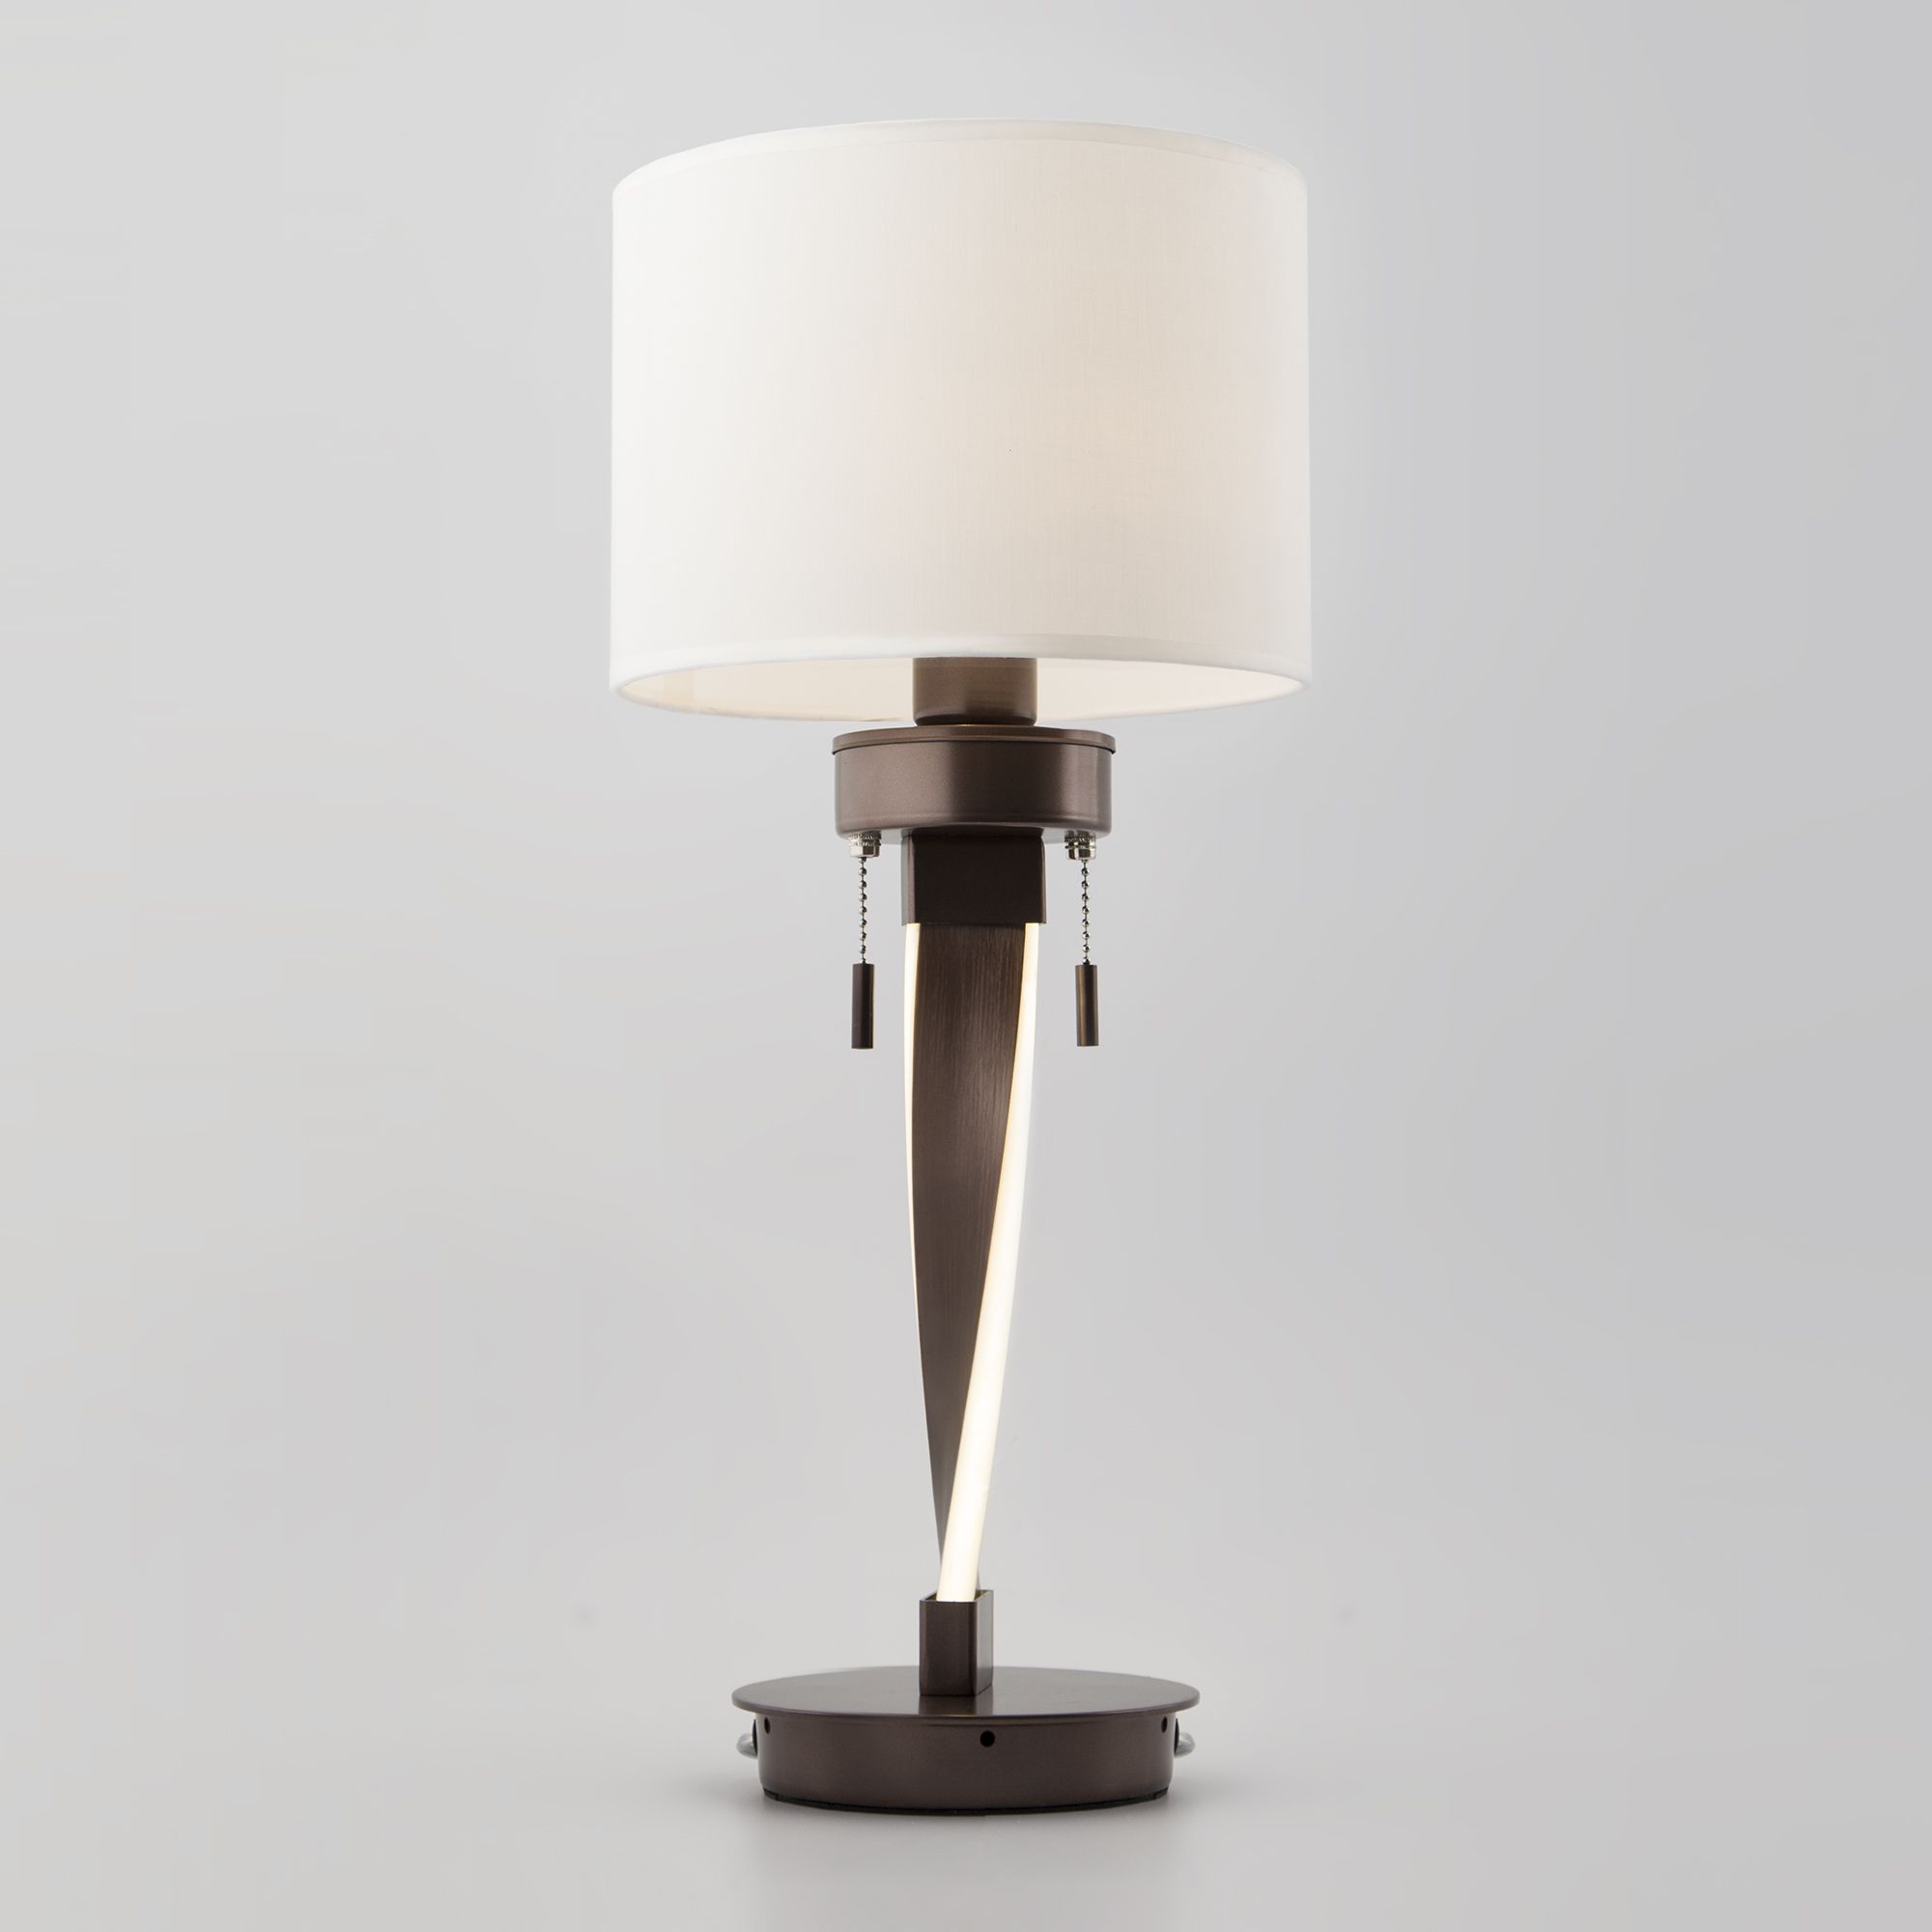 Настольный светодиодный светильник с тканевым абажуром Bogate's Titan 991 белый / коричневый. Фото 1